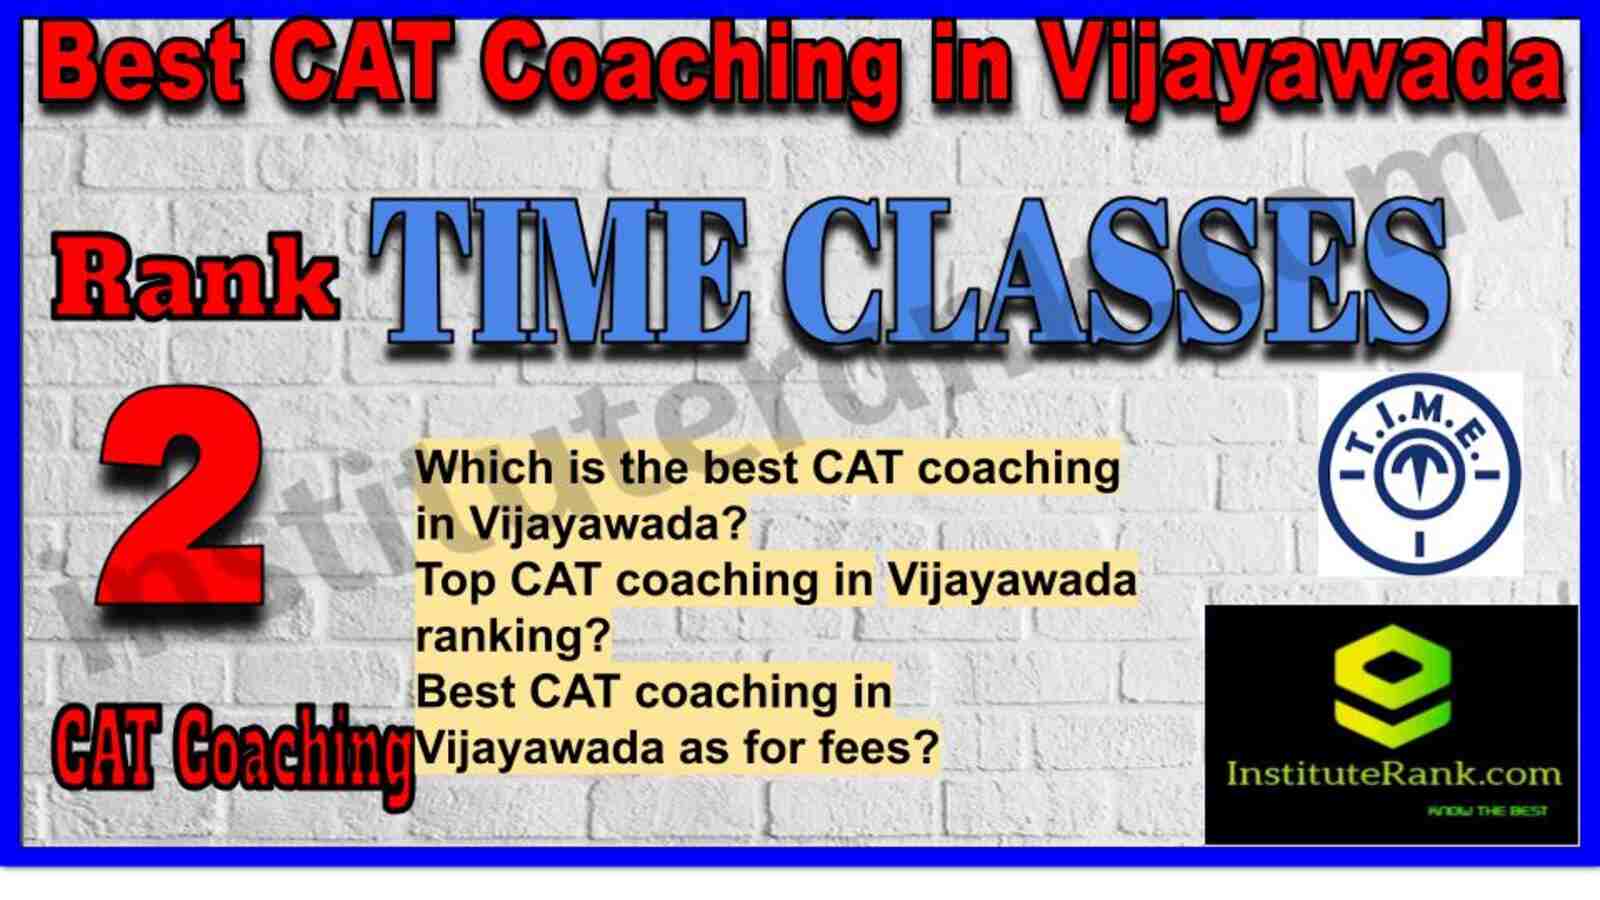 Rank 2. TIME CLASSES CAT Coaching in Vijayawada